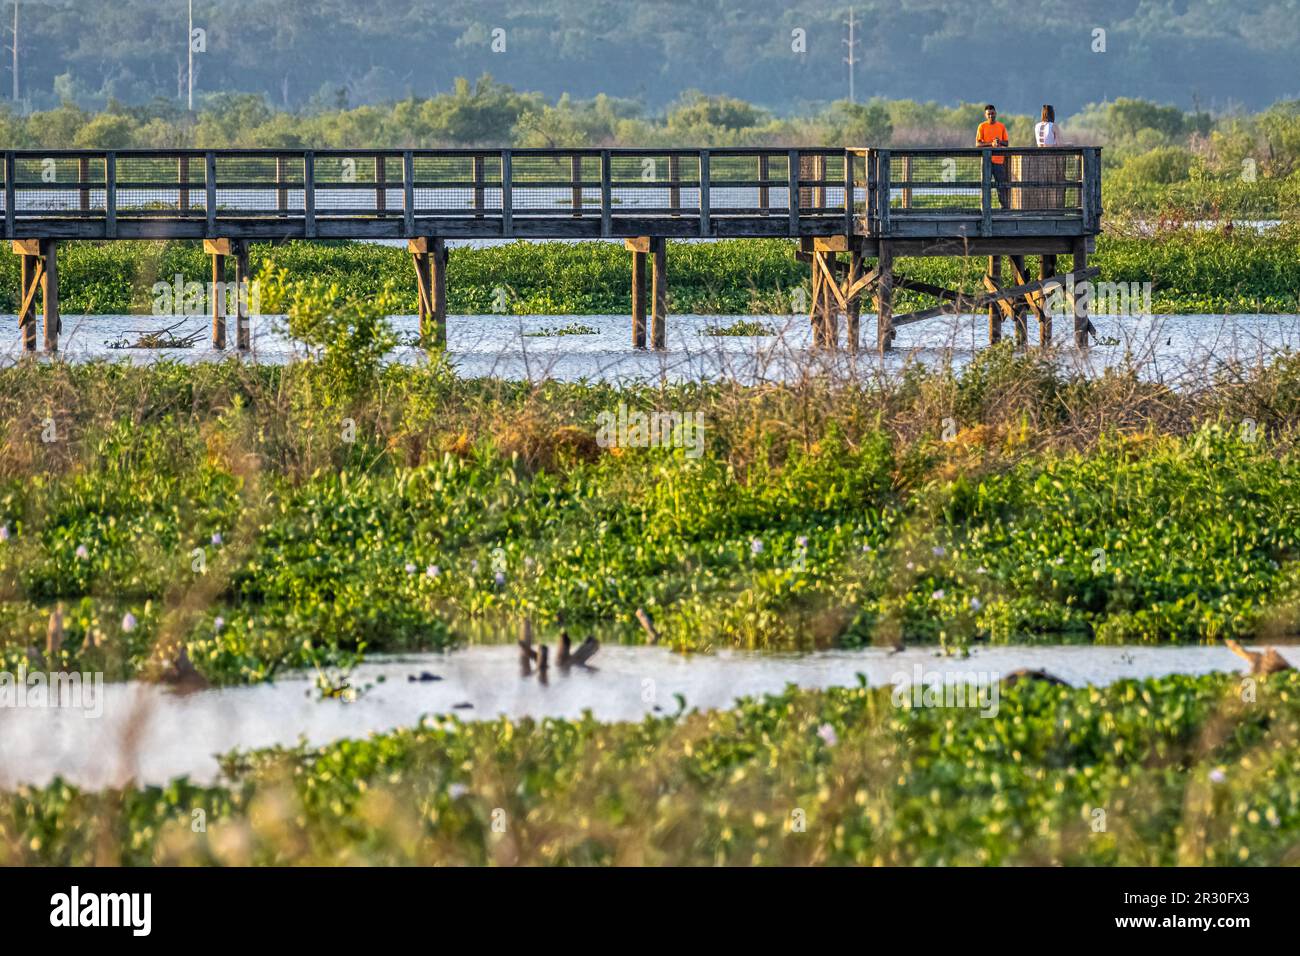 Promenade d'observation d'Ecopassage faites le tour des terres humides et de l'habitat naturel des alligators au parc national Paynes Prairie Preserve, à Micanopy, en Floride. (ÉTATS-UNIS) Banque D'Images